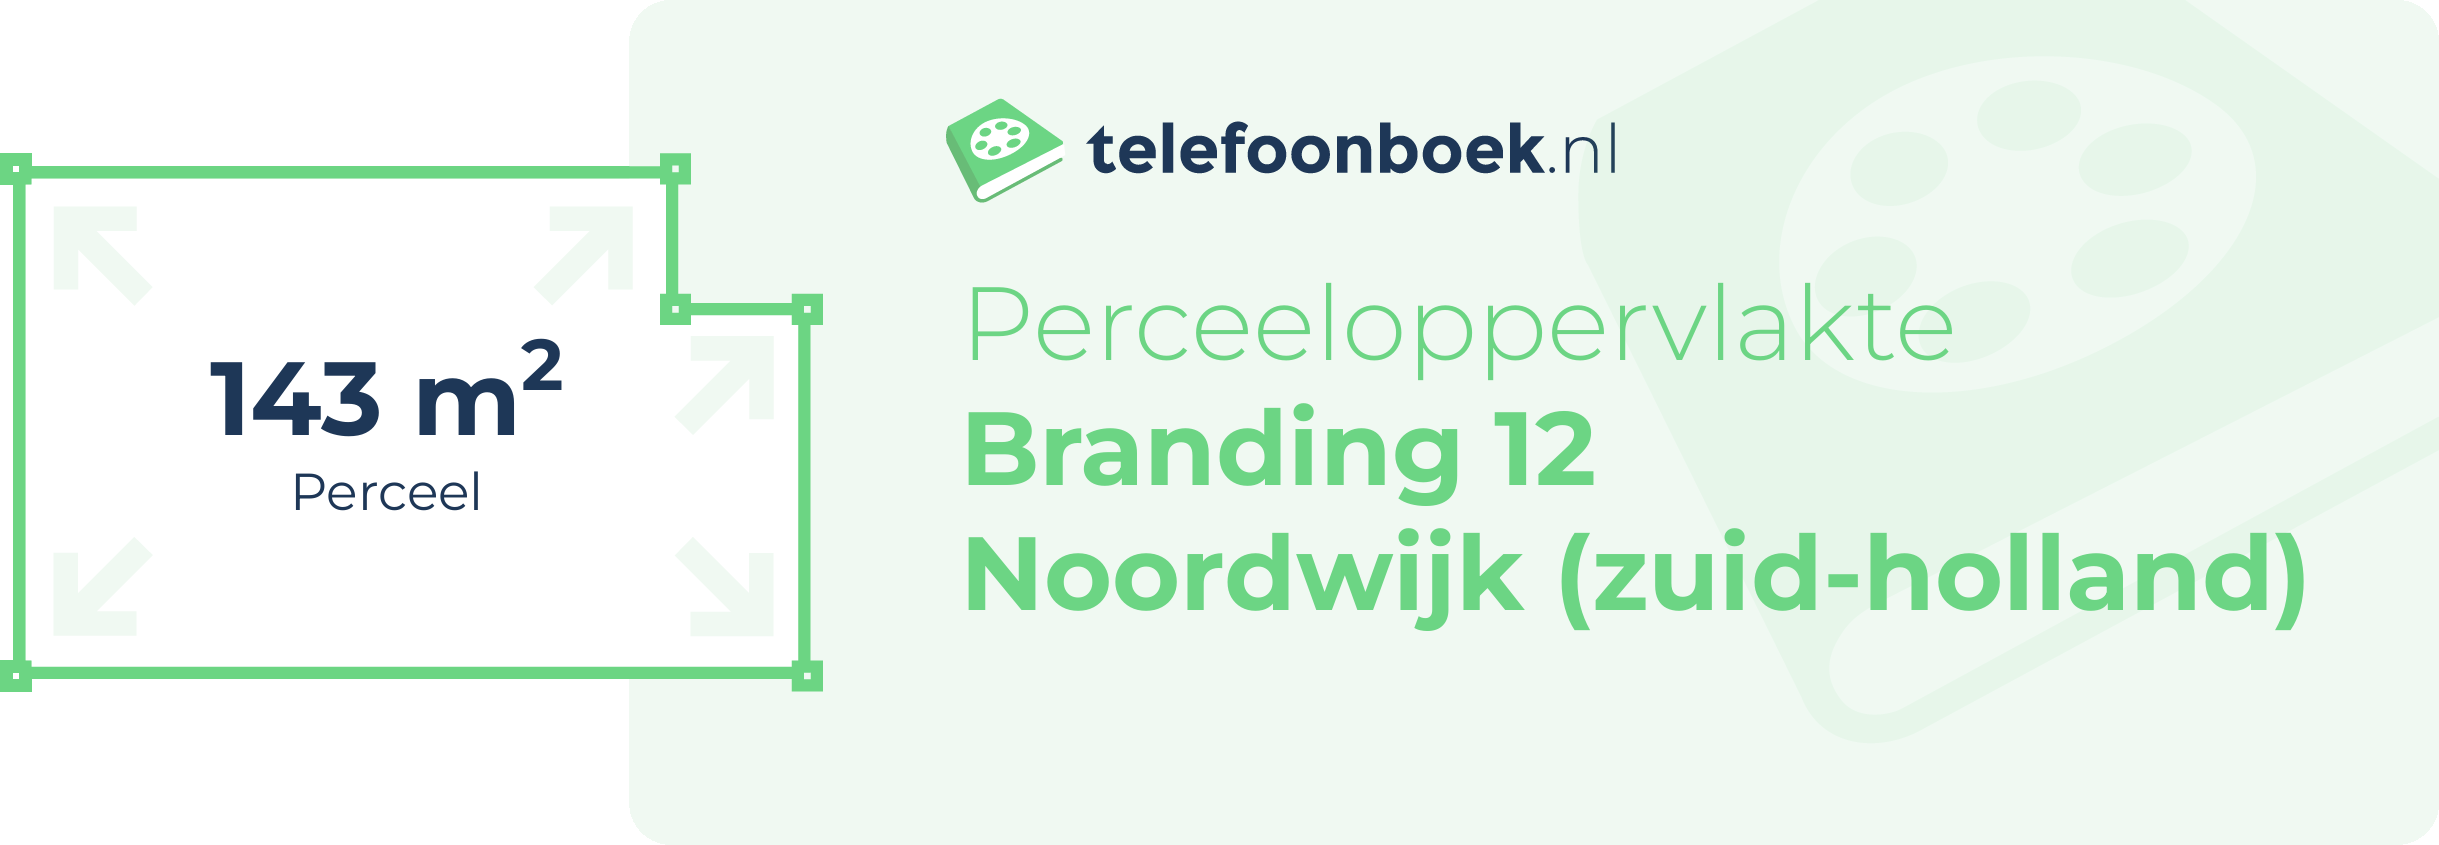 Perceeloppervlakte Branding 12 Noordwijk (Zuid-Holland)